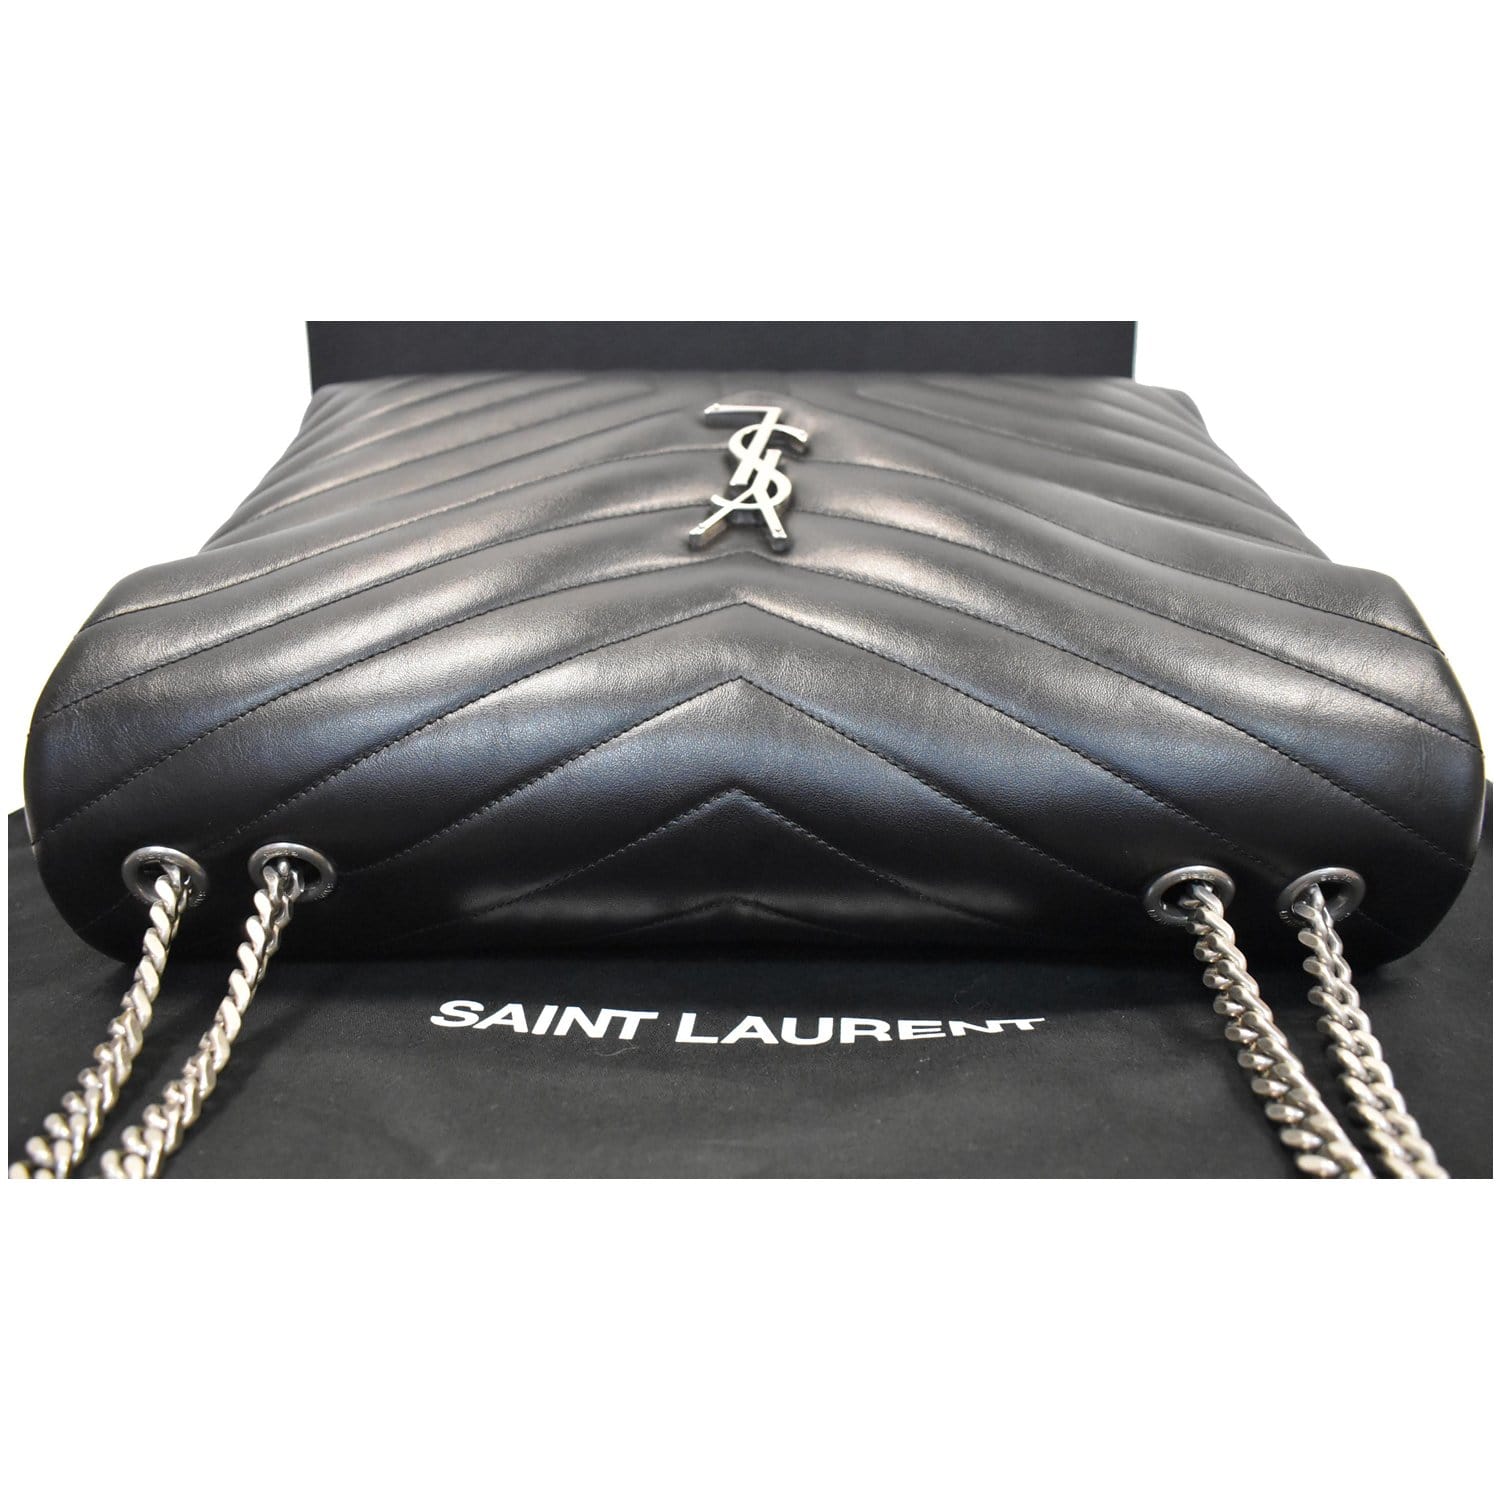 Ysl (Saint Laurent) Loulou Black Leather Chain Shoulder Bag w/ Dust Bag